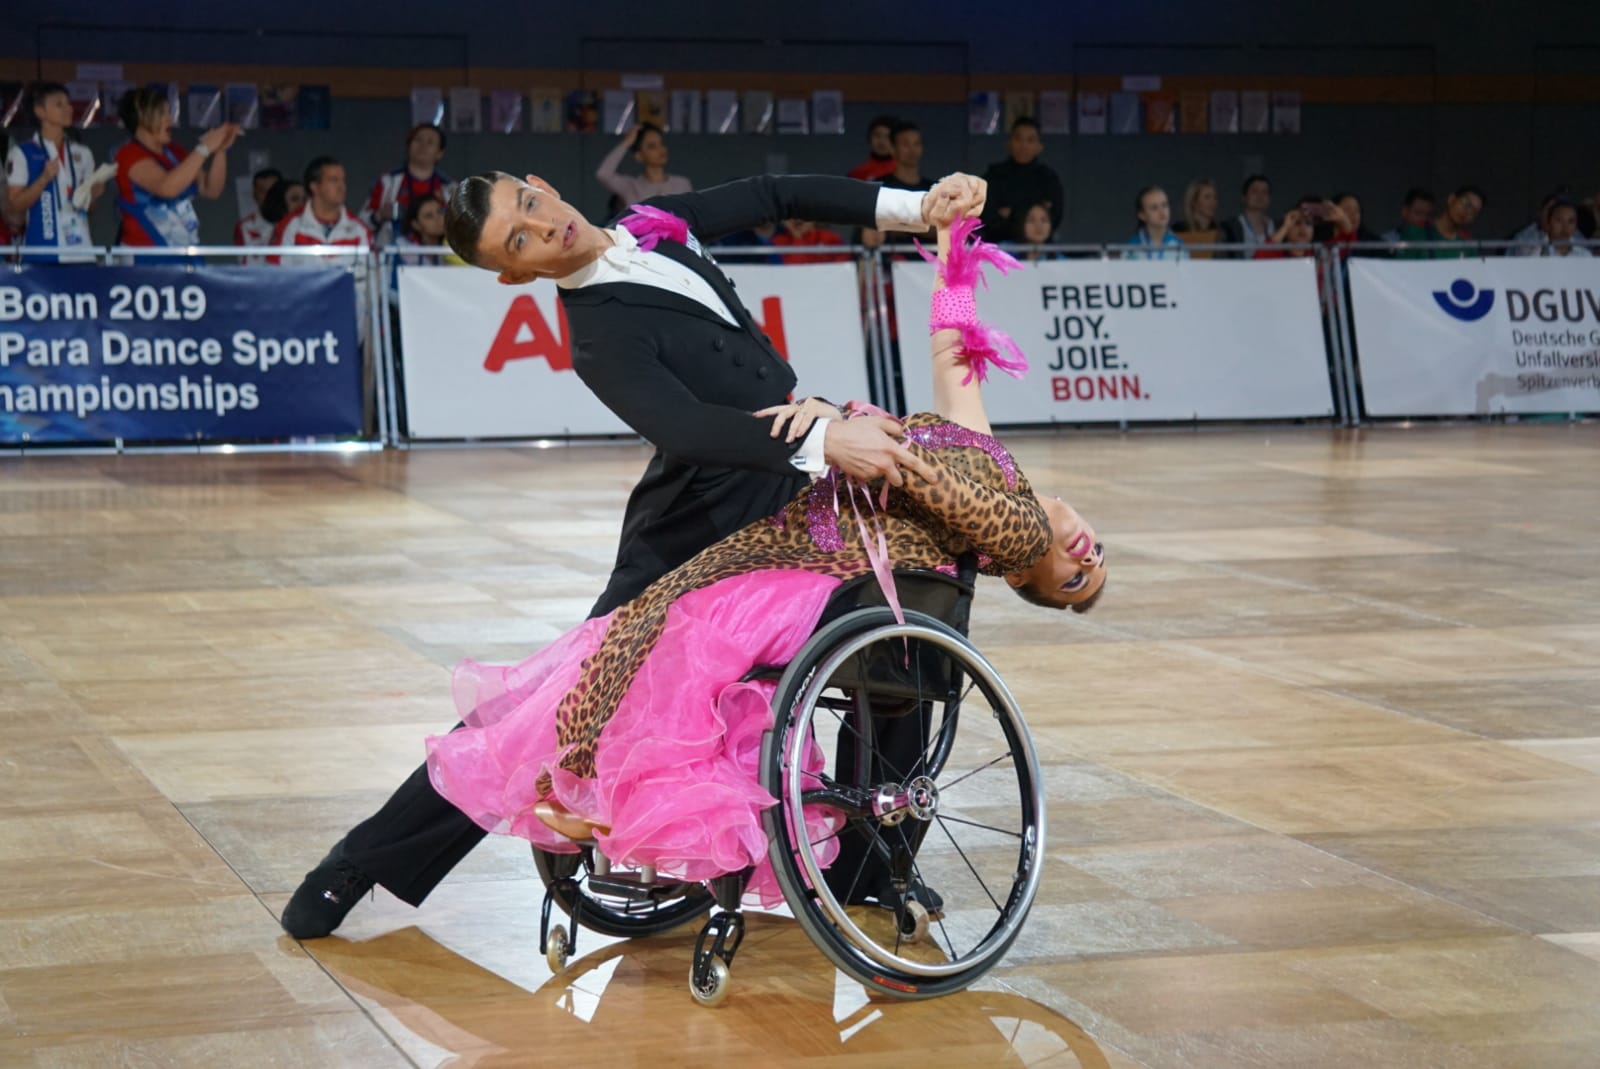  World ParaDance Sport Cup 2021: la competizione mondiale per gli atleti paralimpici Wheelchair